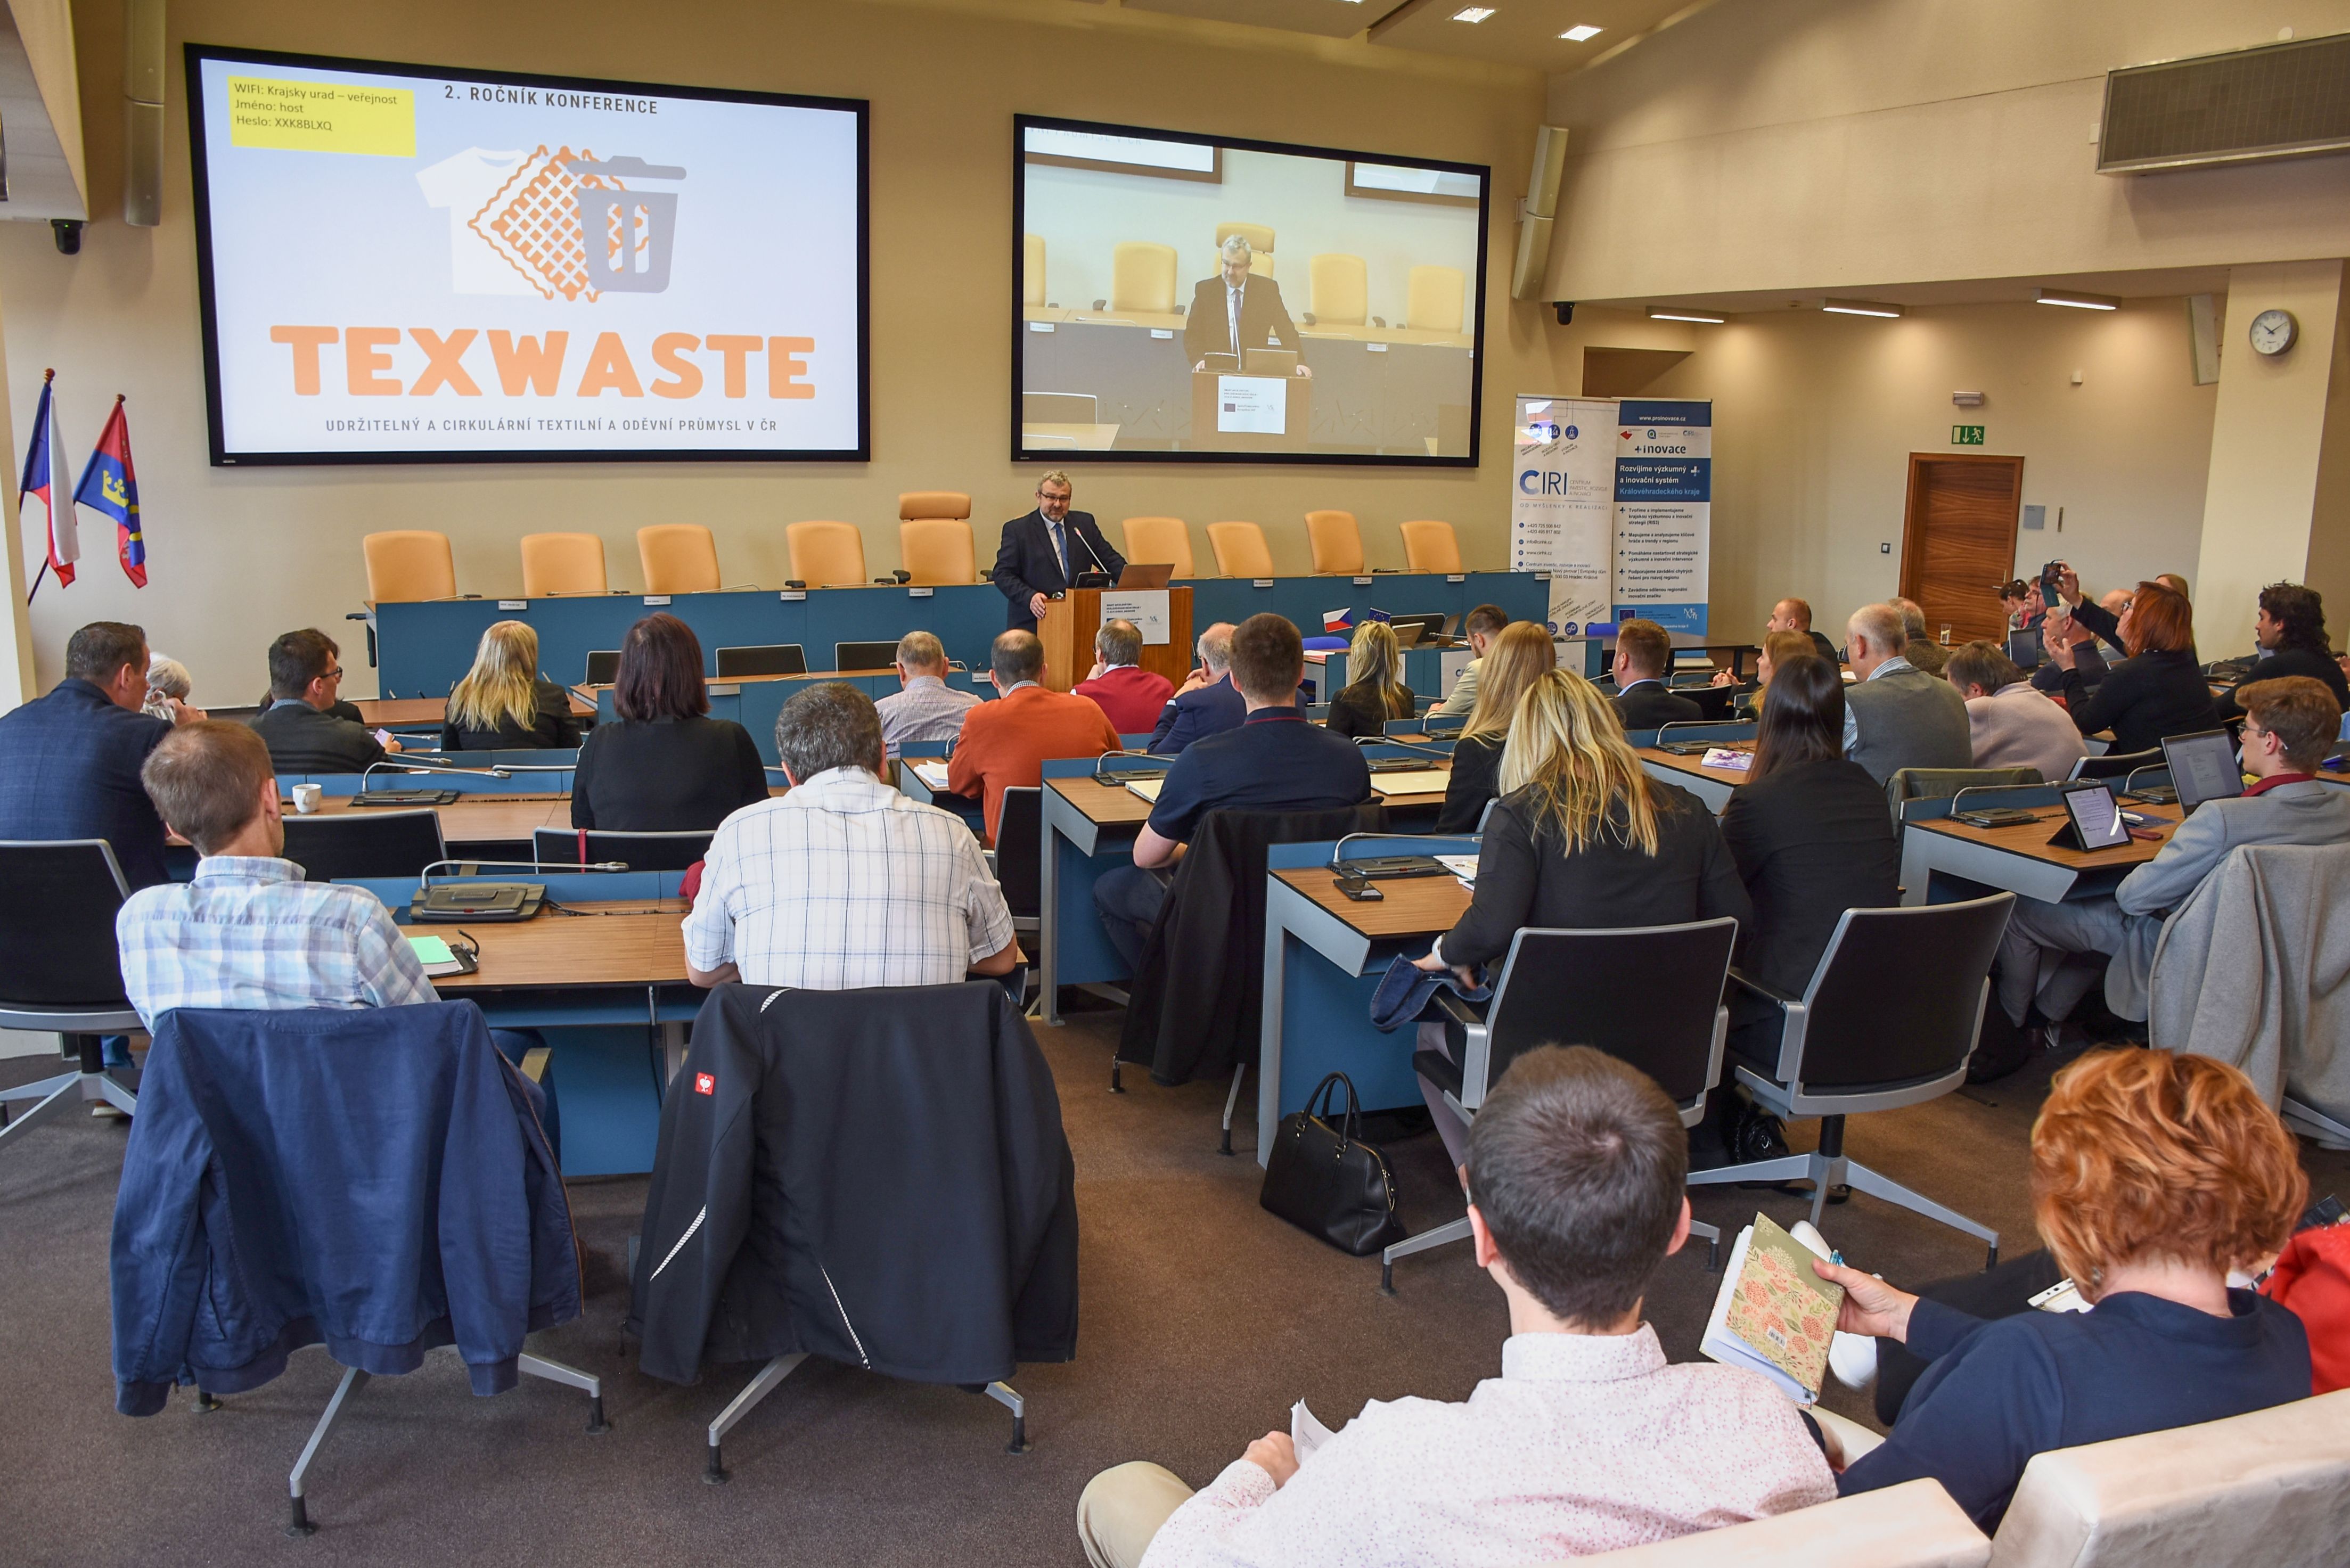 Konference Texwaste představila trendy v recyklaci textilu a oděvů